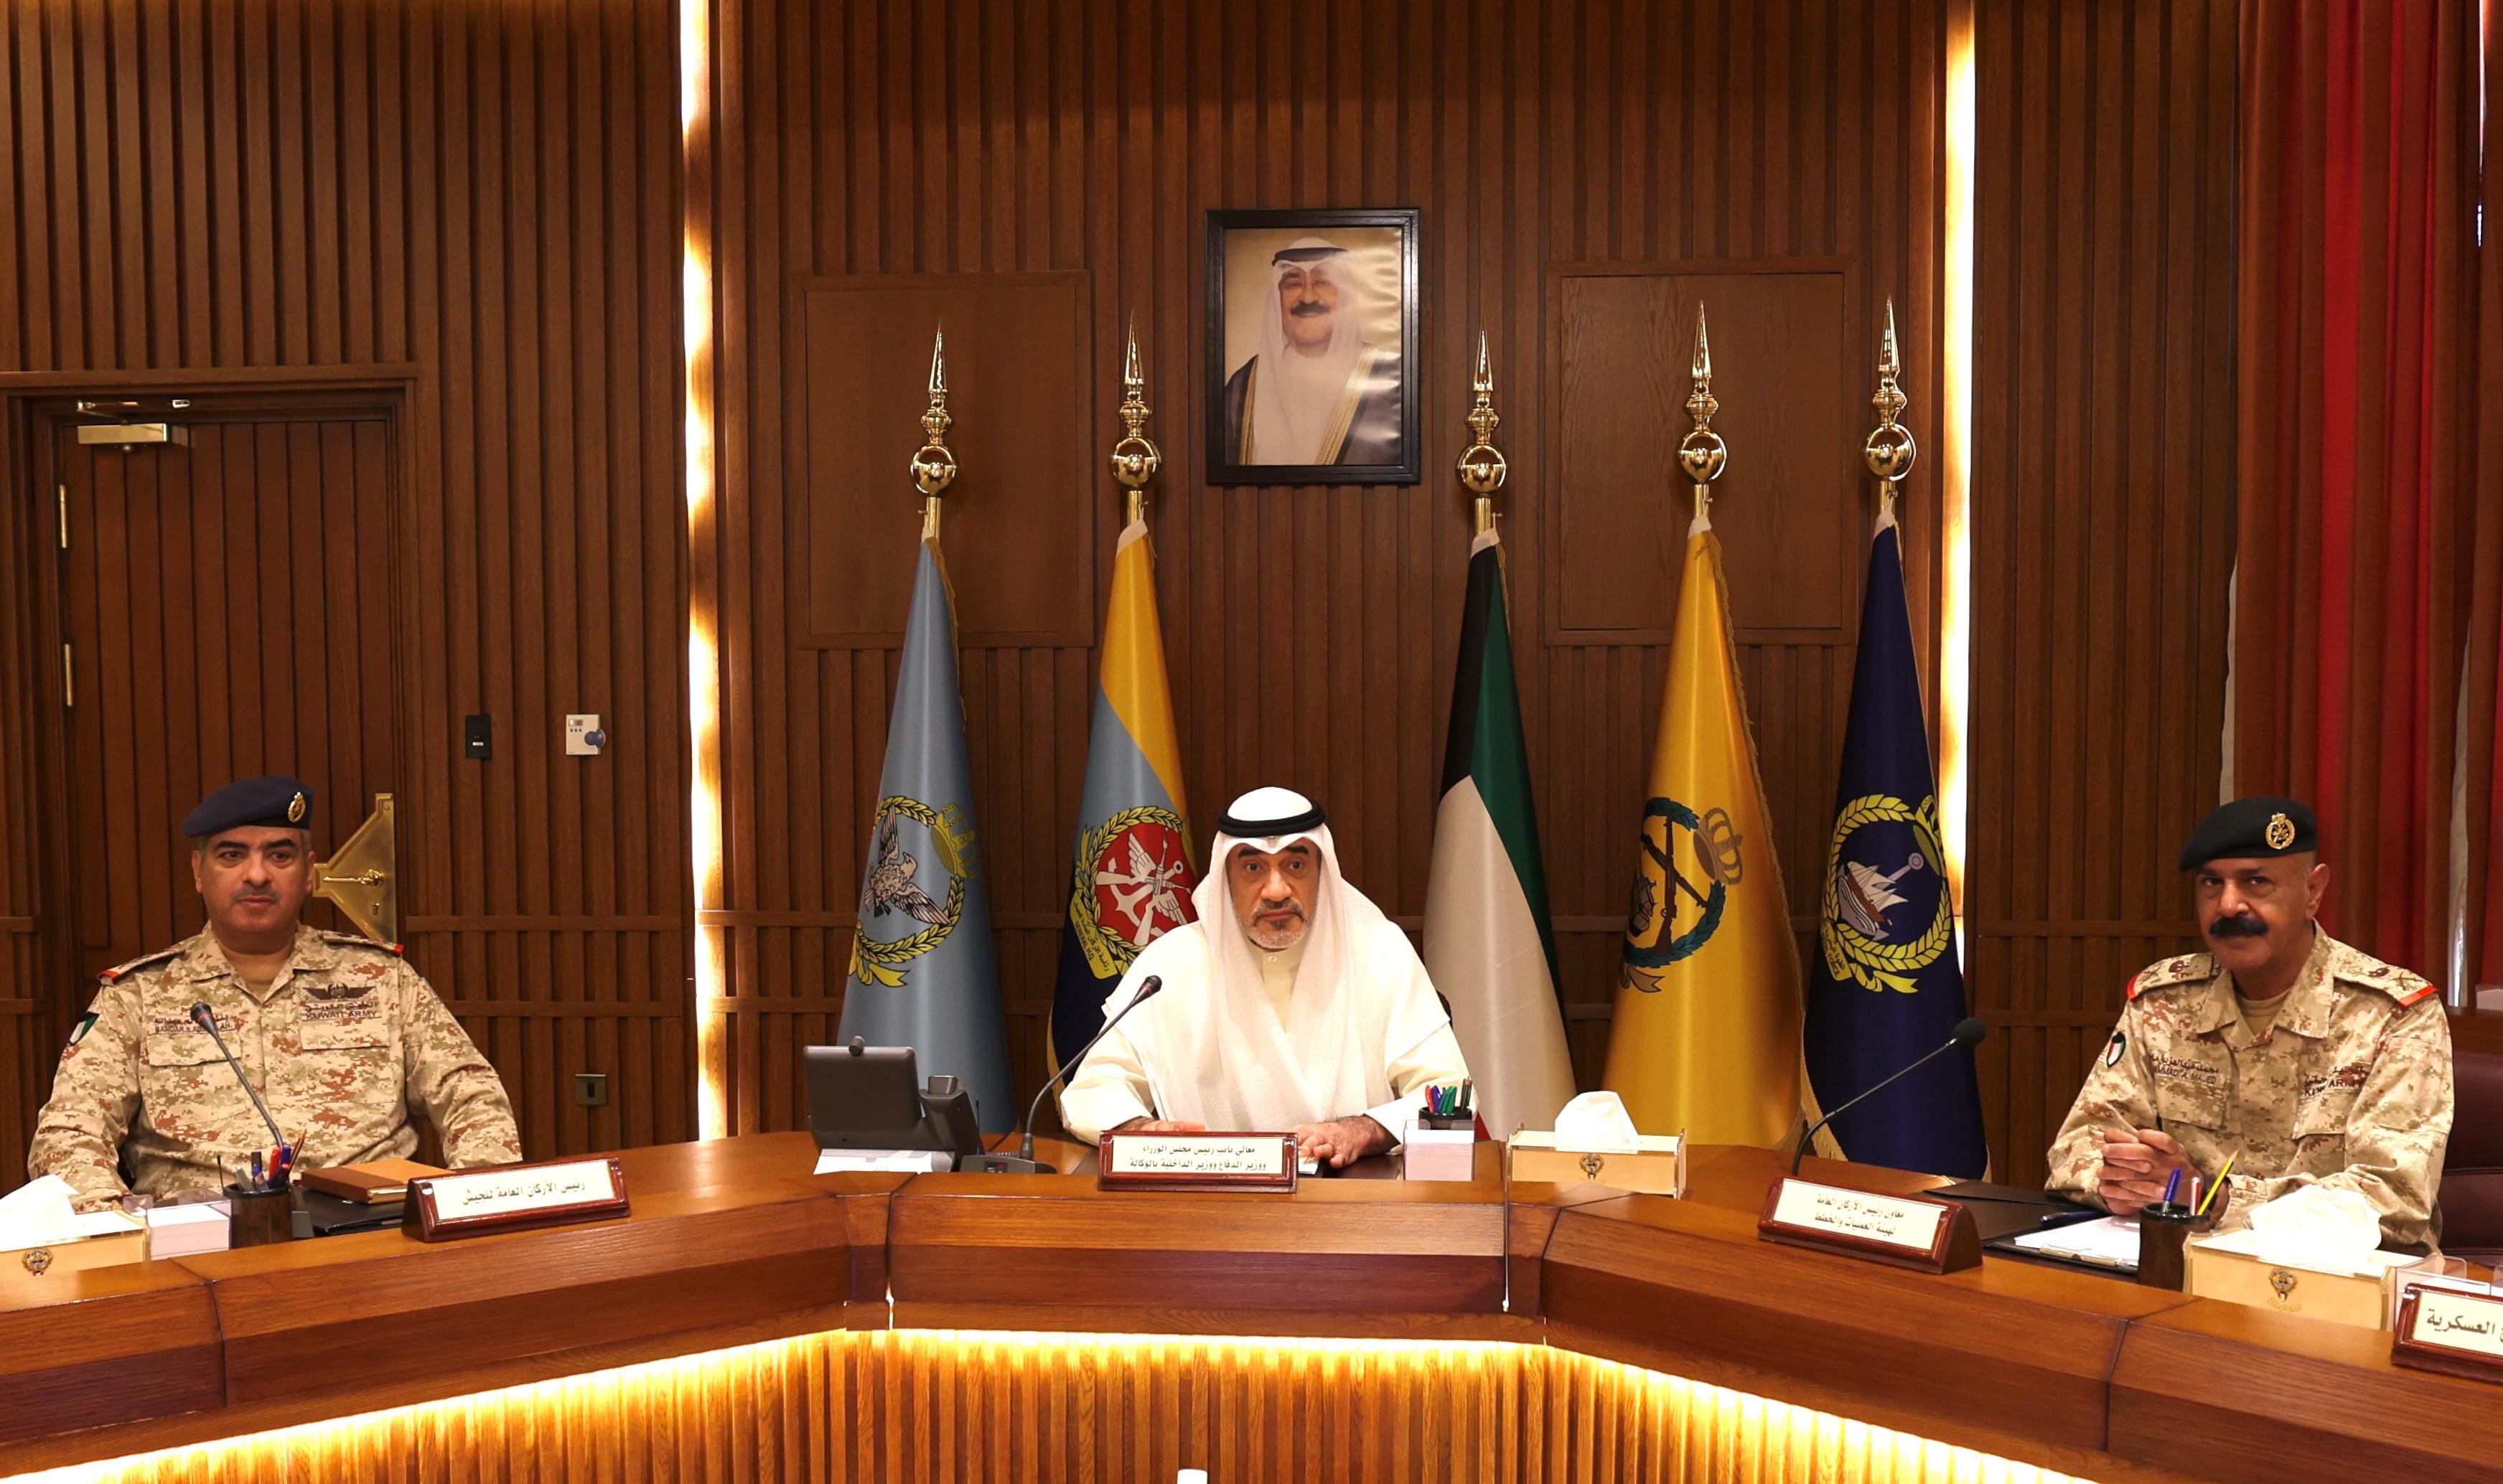 نائب رئيس مجلس الوزراء وزير الدفاع الشيخ فهد يوسف سعود الصباح يترأس الاجتماع الذي ضم كبار القادة العسكريين